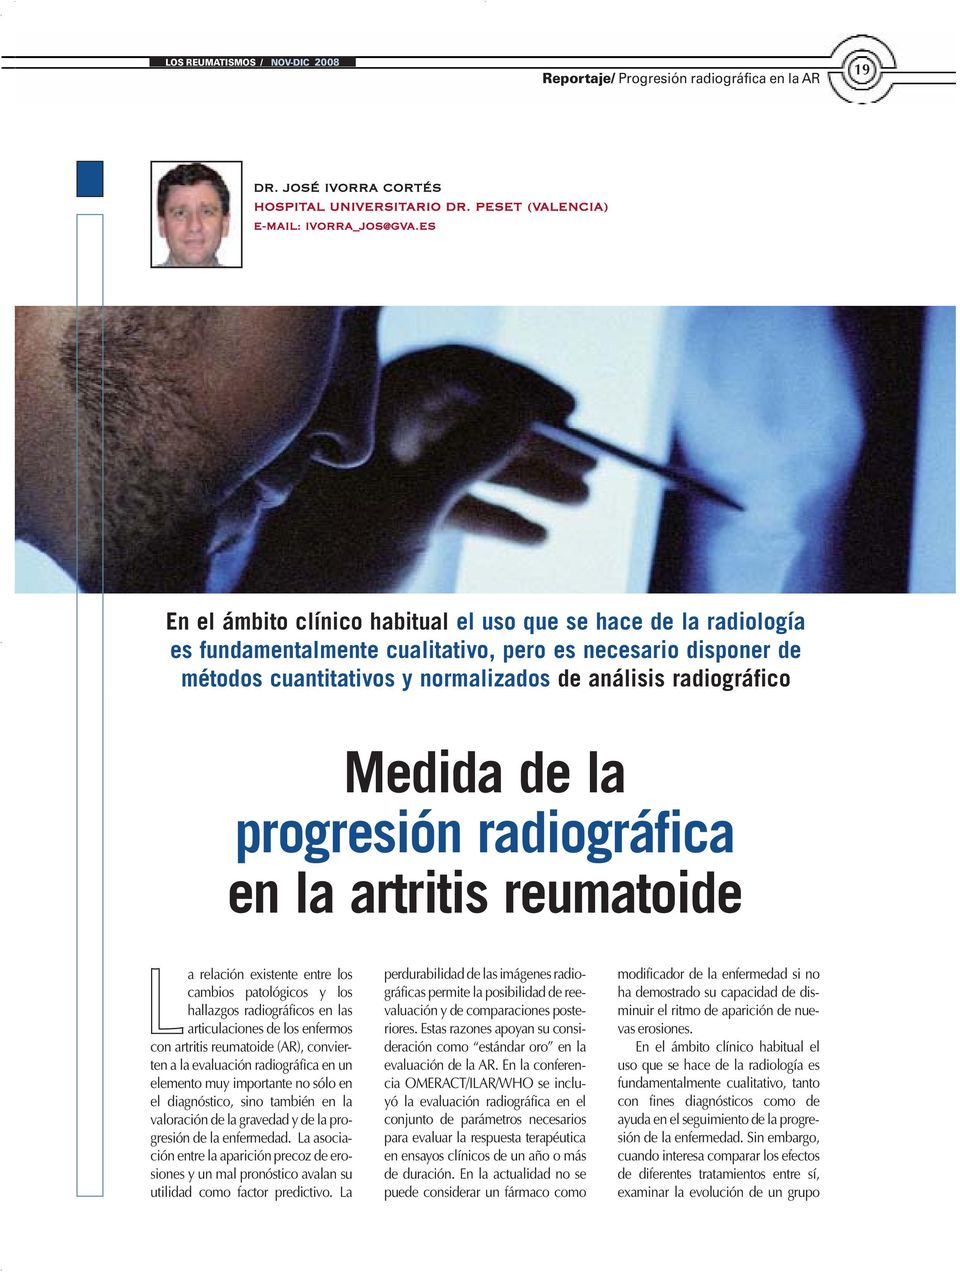 Medida de la progresión radiográfica en la artritis reumatoide La relación existente entre los cambios patológicos y los hallazgos radiográficos en las articulaciones de los enfermos con artritis